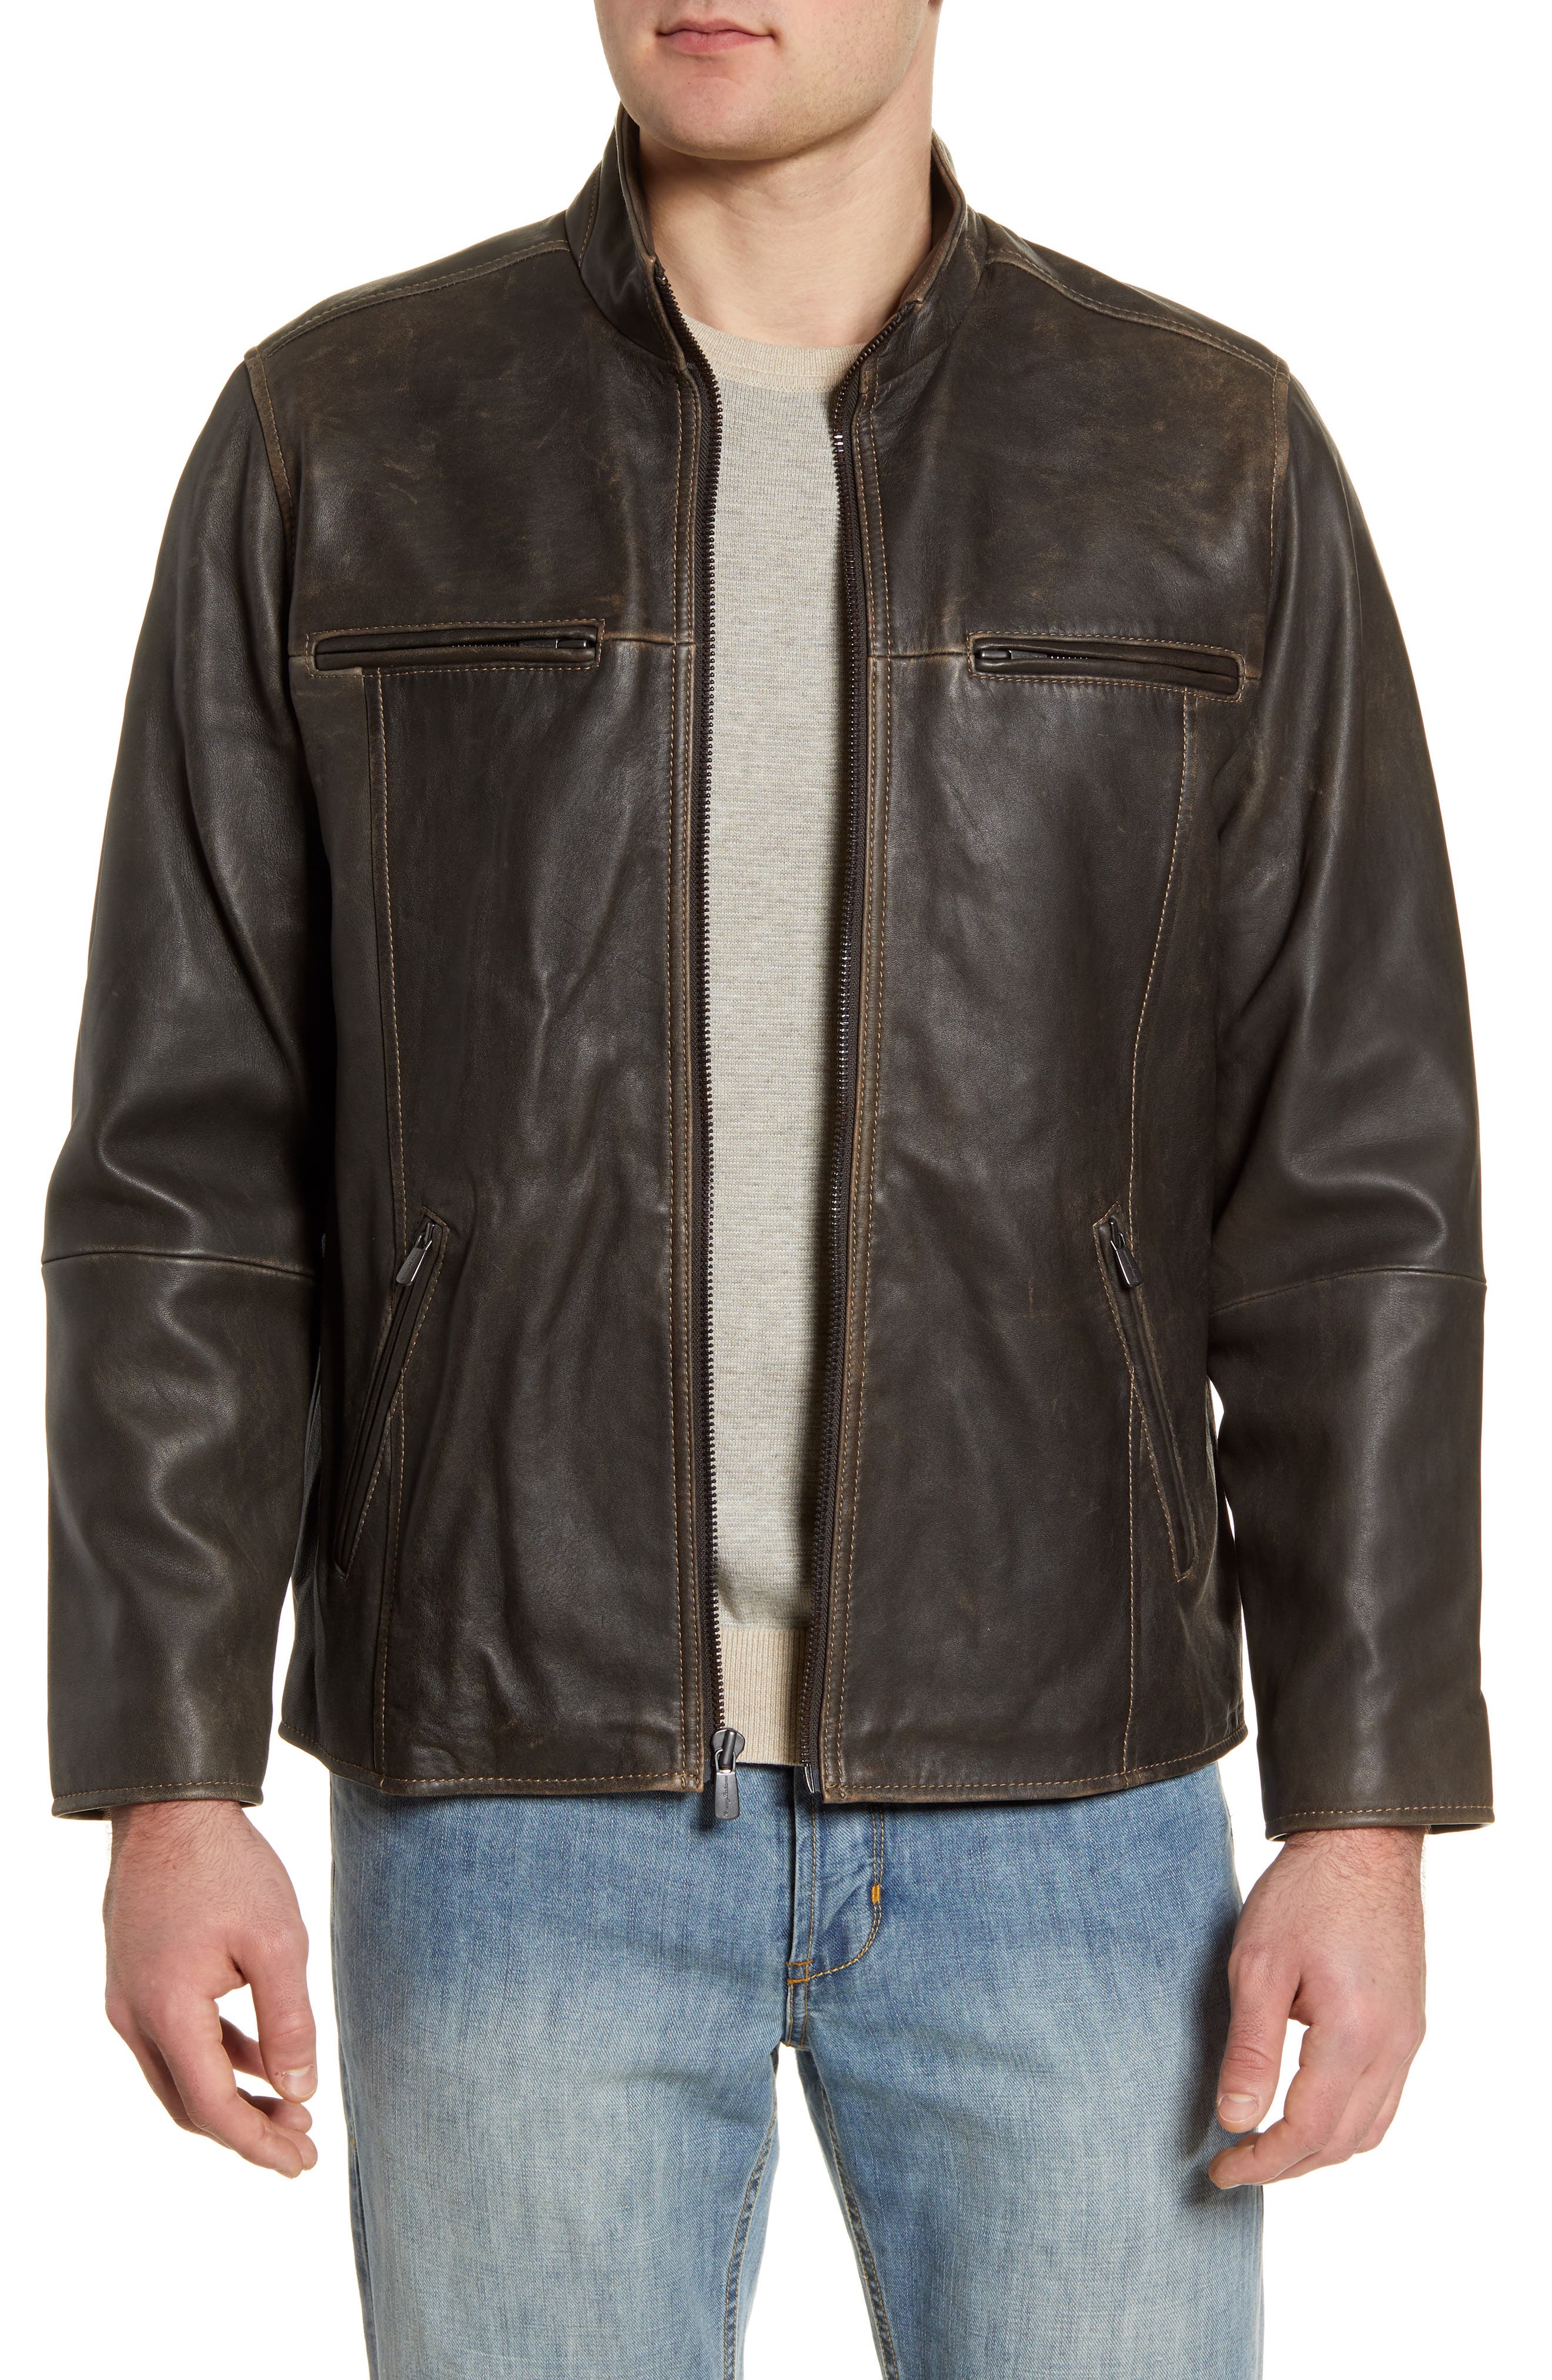 tommy bahama leather jacket